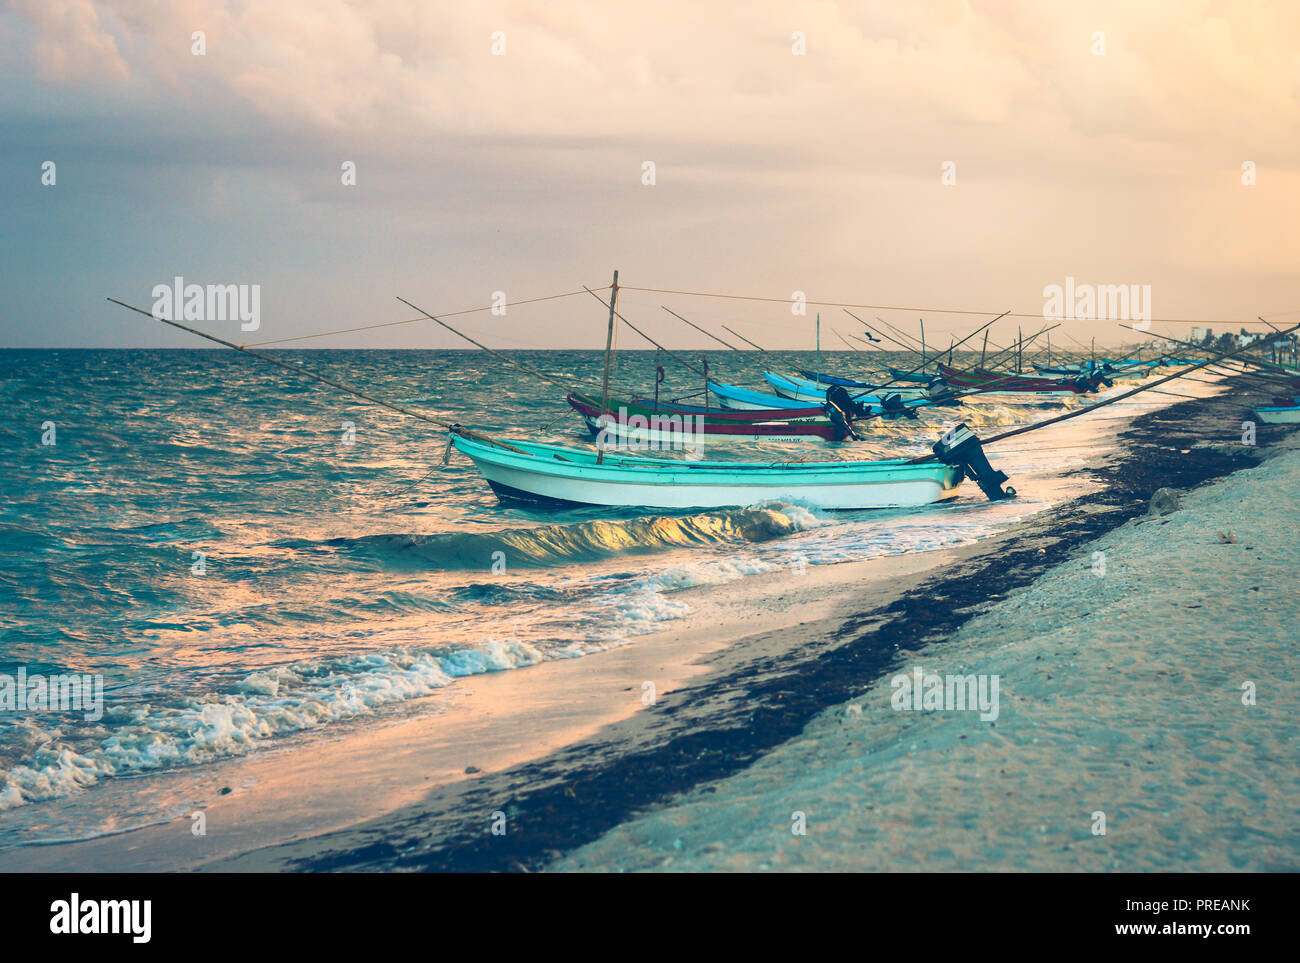 Boats on the sea of Progreso, Yucatan, Mexico. Stock Photo